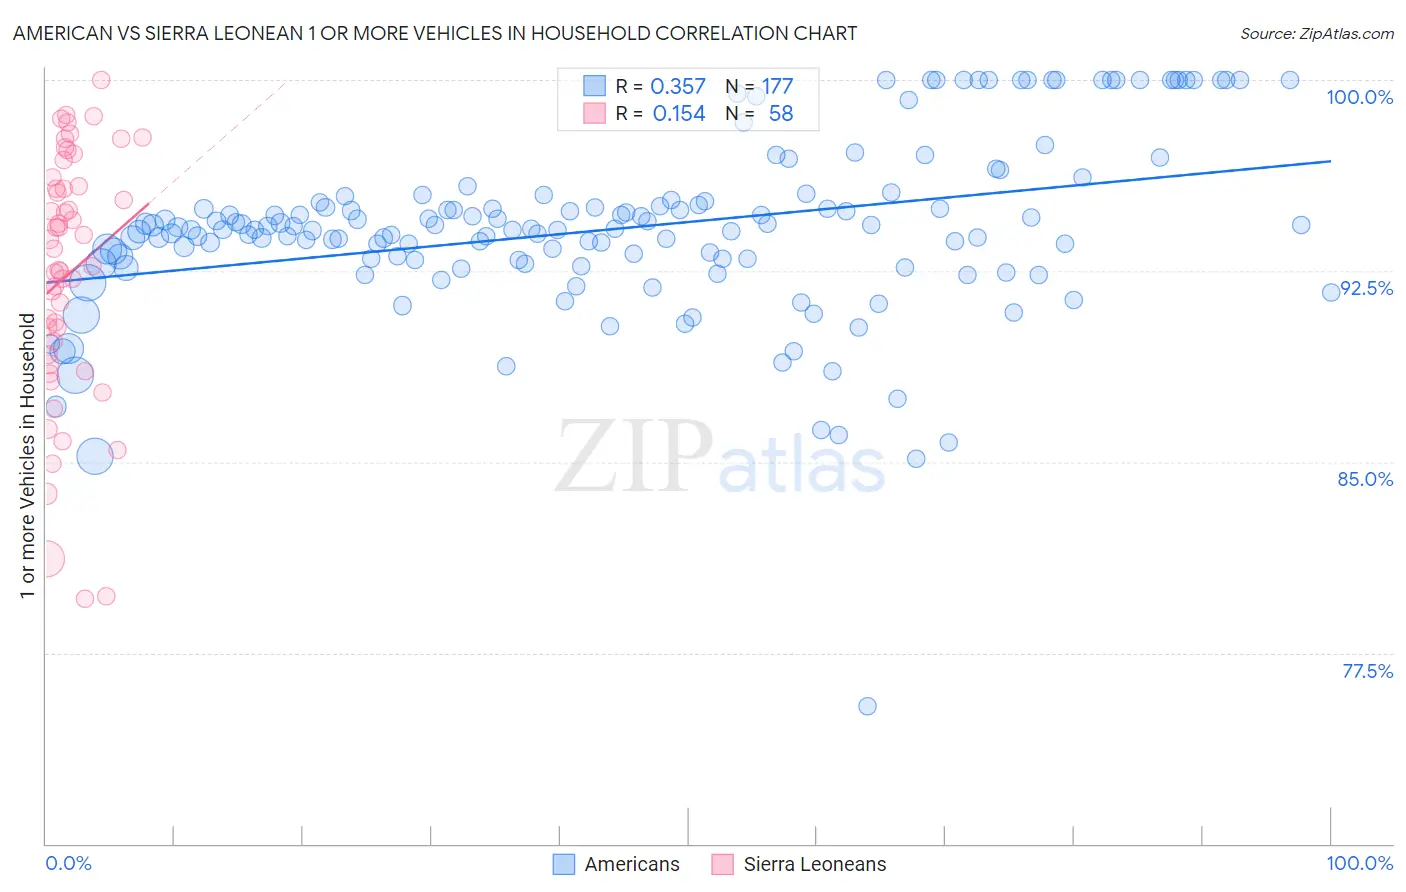 American vs Sierra Leonean 1 or more Vehicles in Household